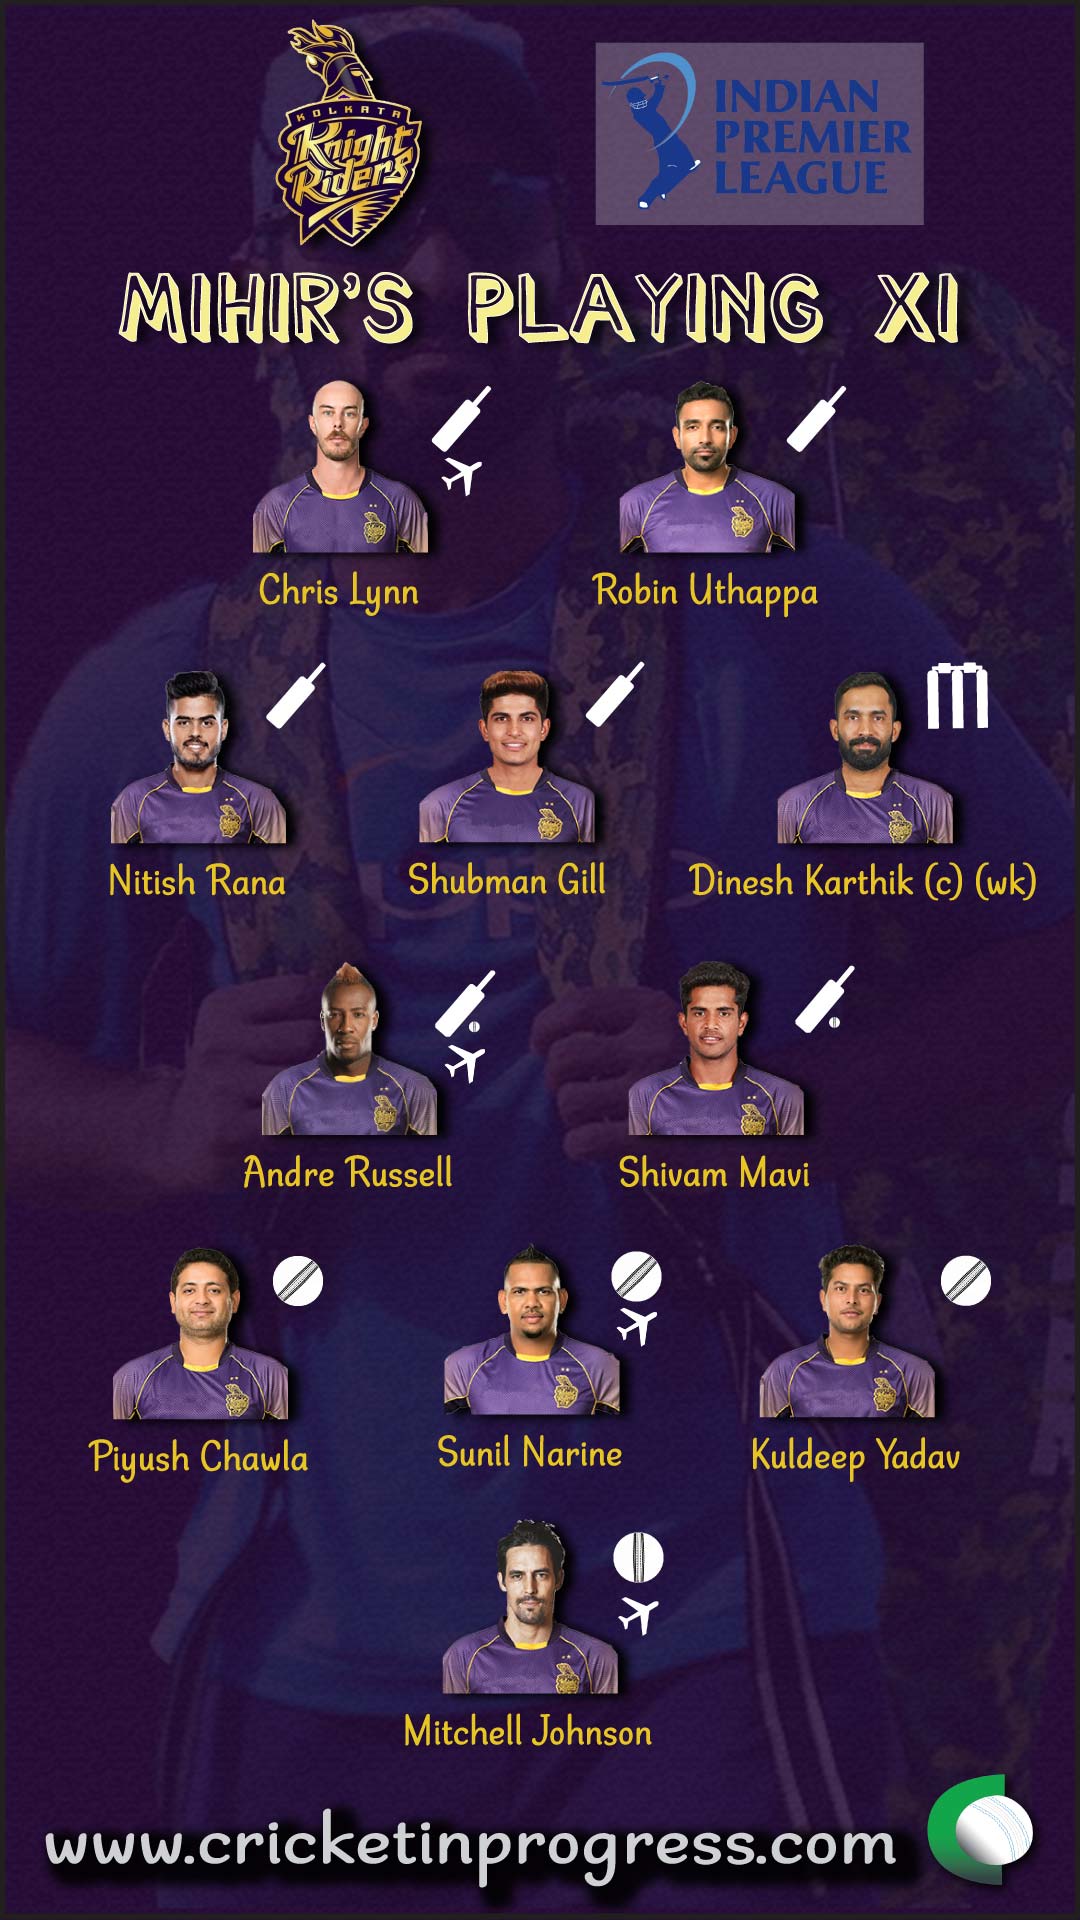 KKR Mihir Playing XI 2018